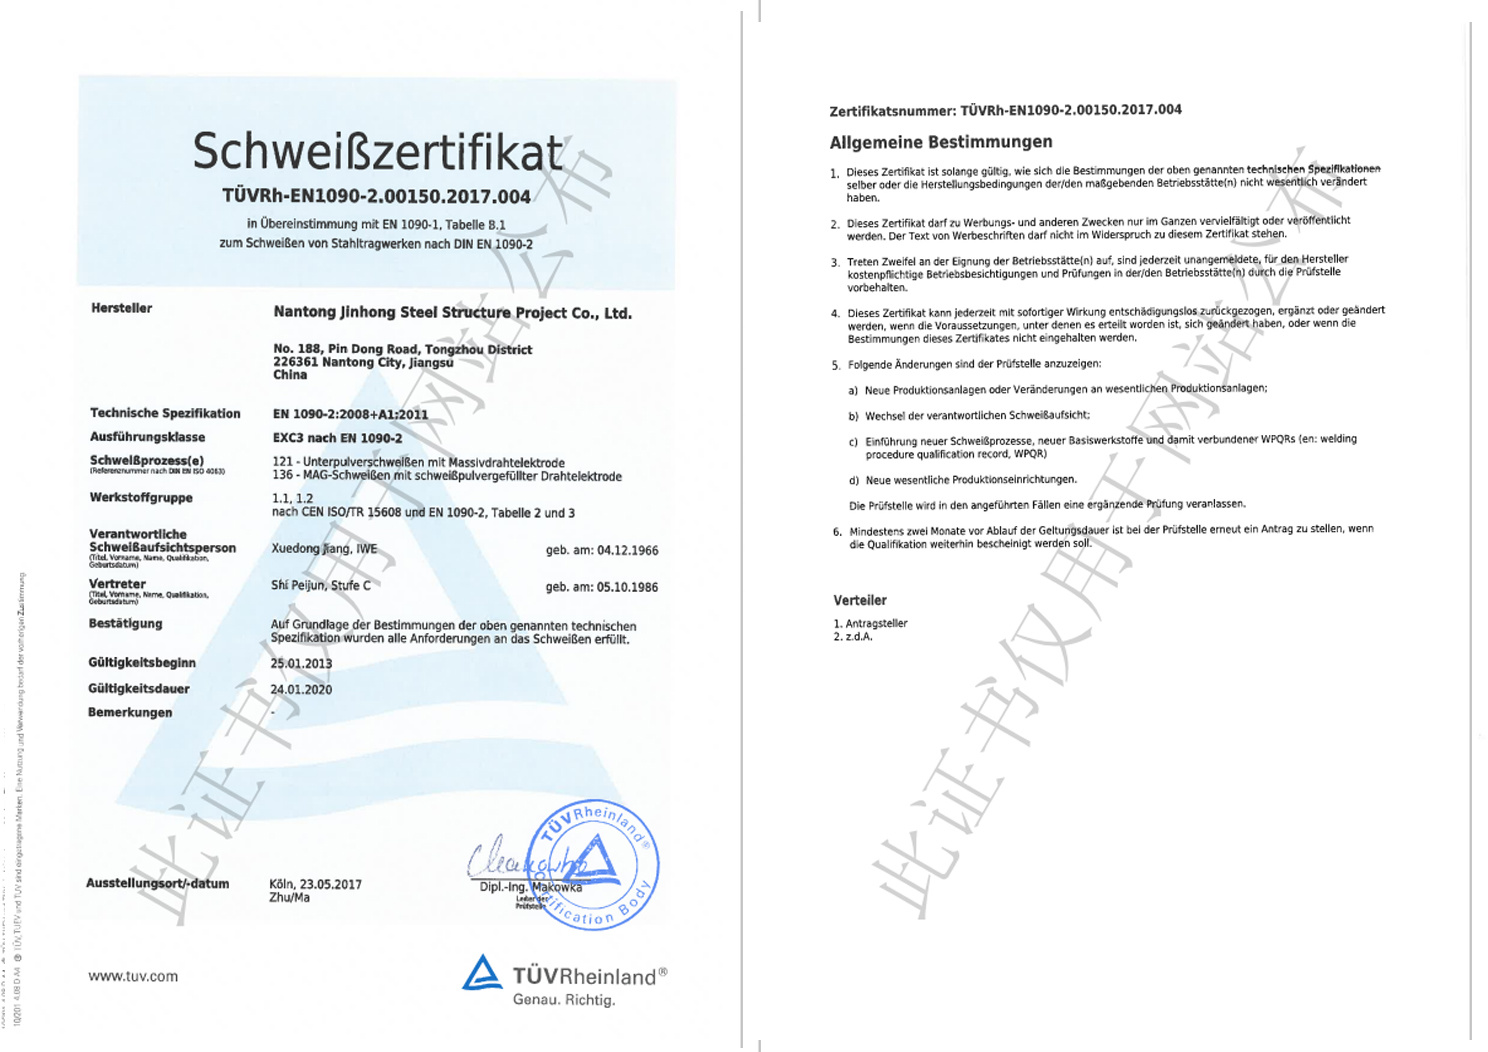 南通晉弘順利通過EN 1090復審，并增加ISO3834國際焊接認證